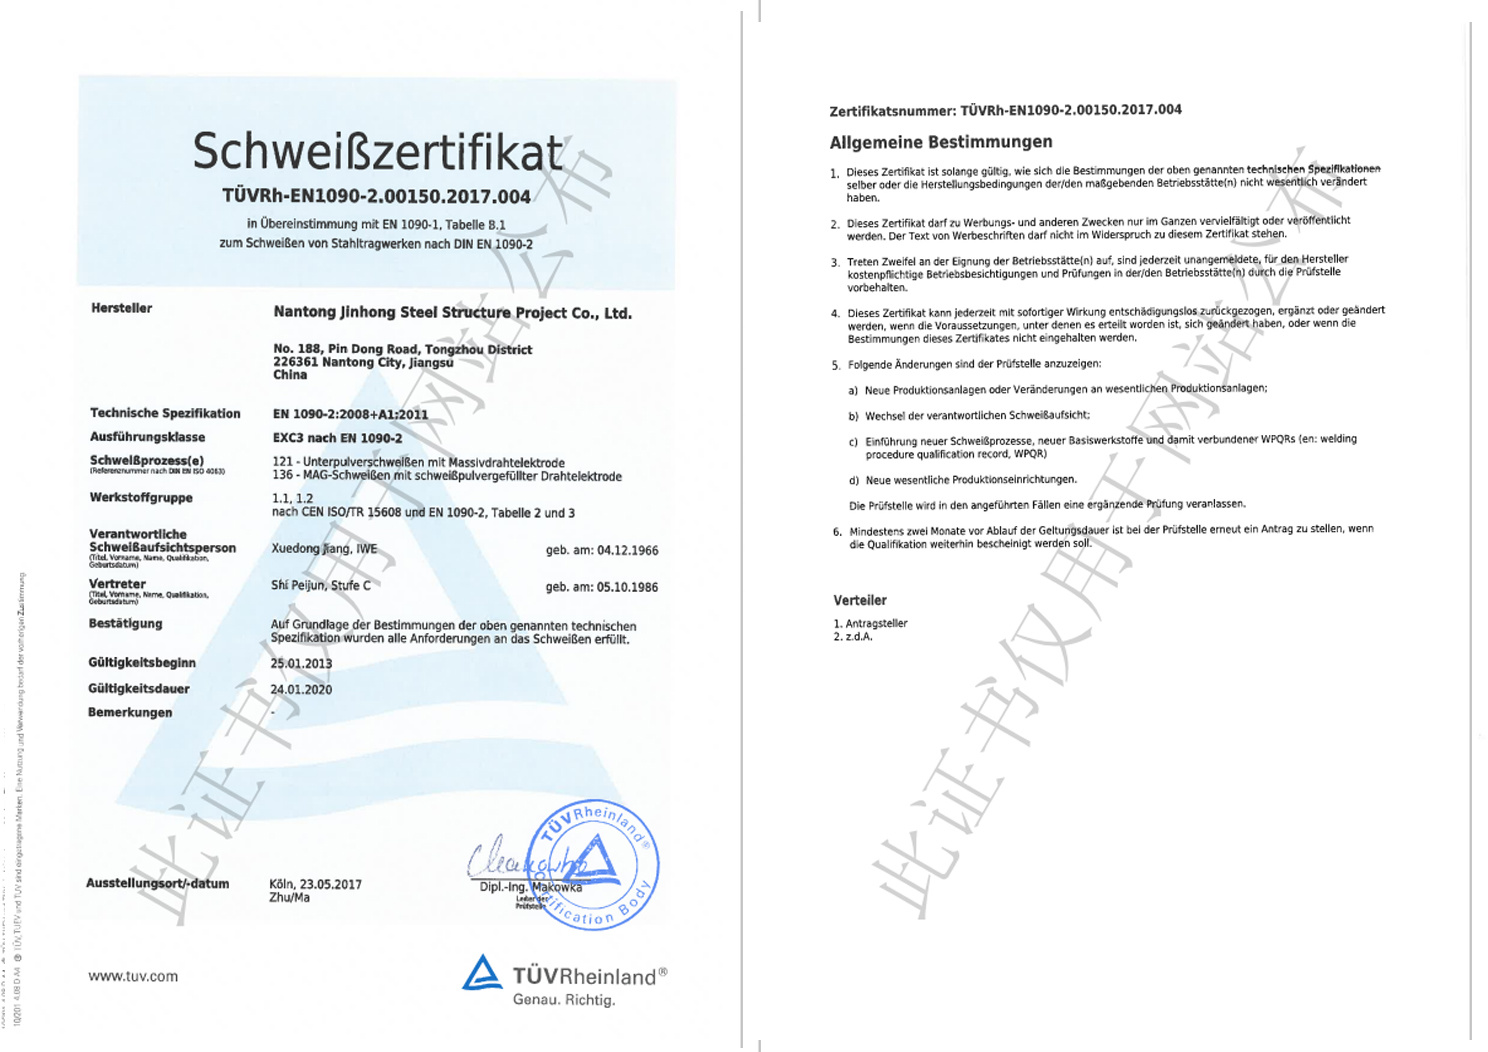 南通晉弘順利通過EN 1090復審，并增加ISO3834國際焊接認證